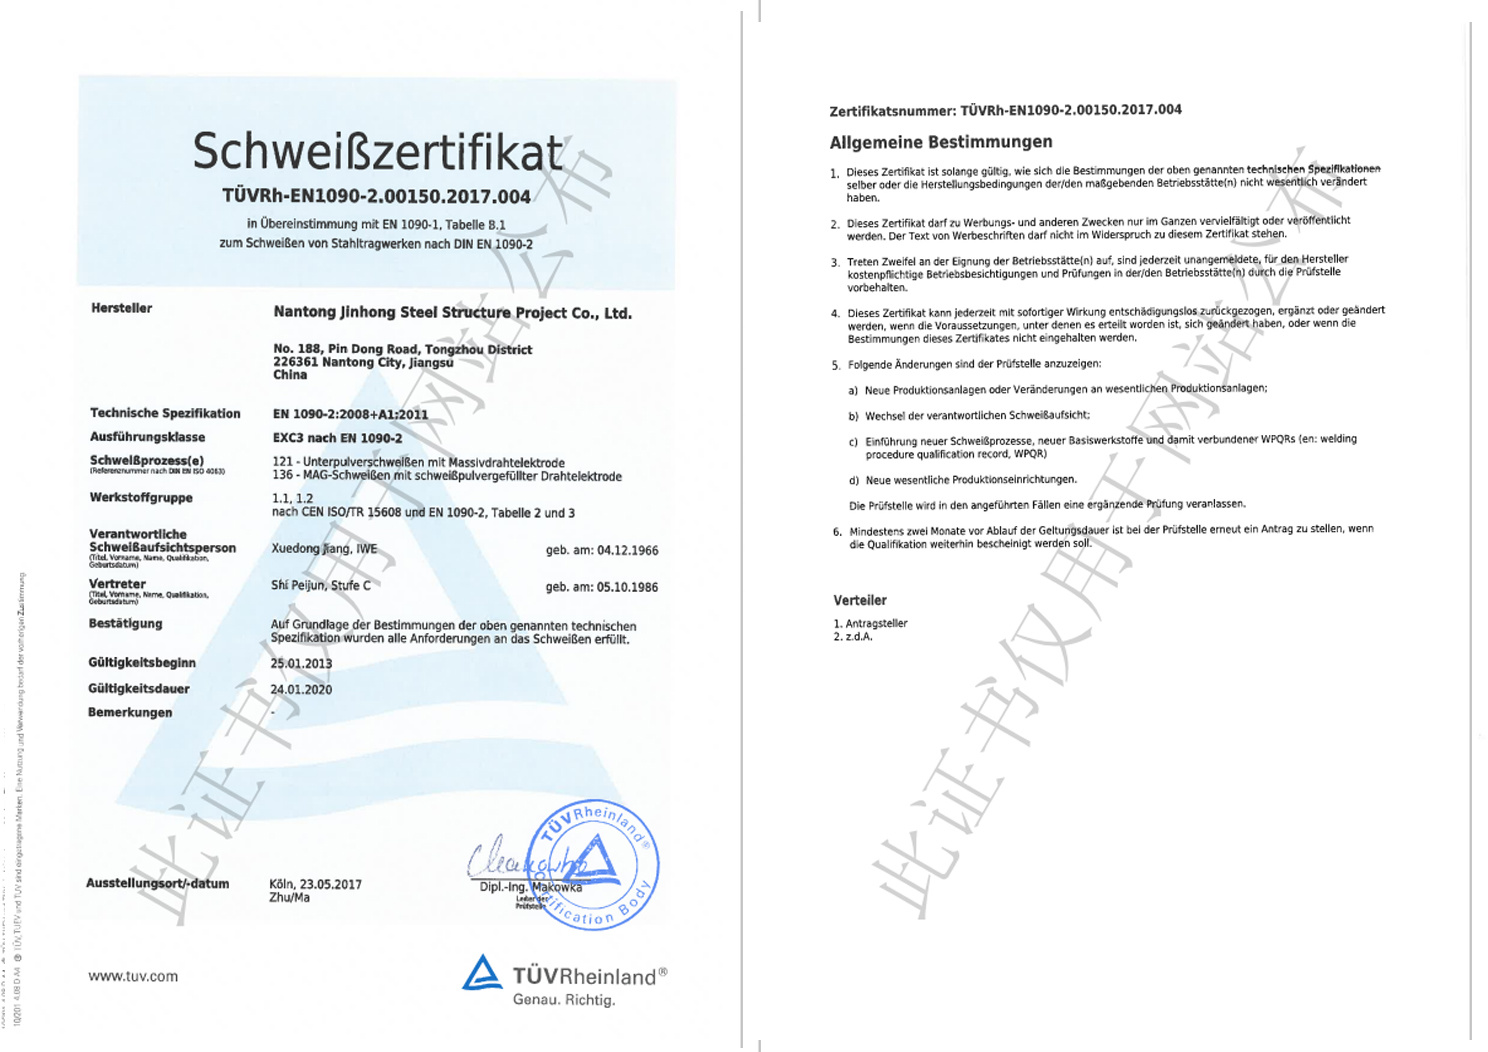 南通晉弘順利通過EN 1090復審，并增加ISO3834國際焊接認證